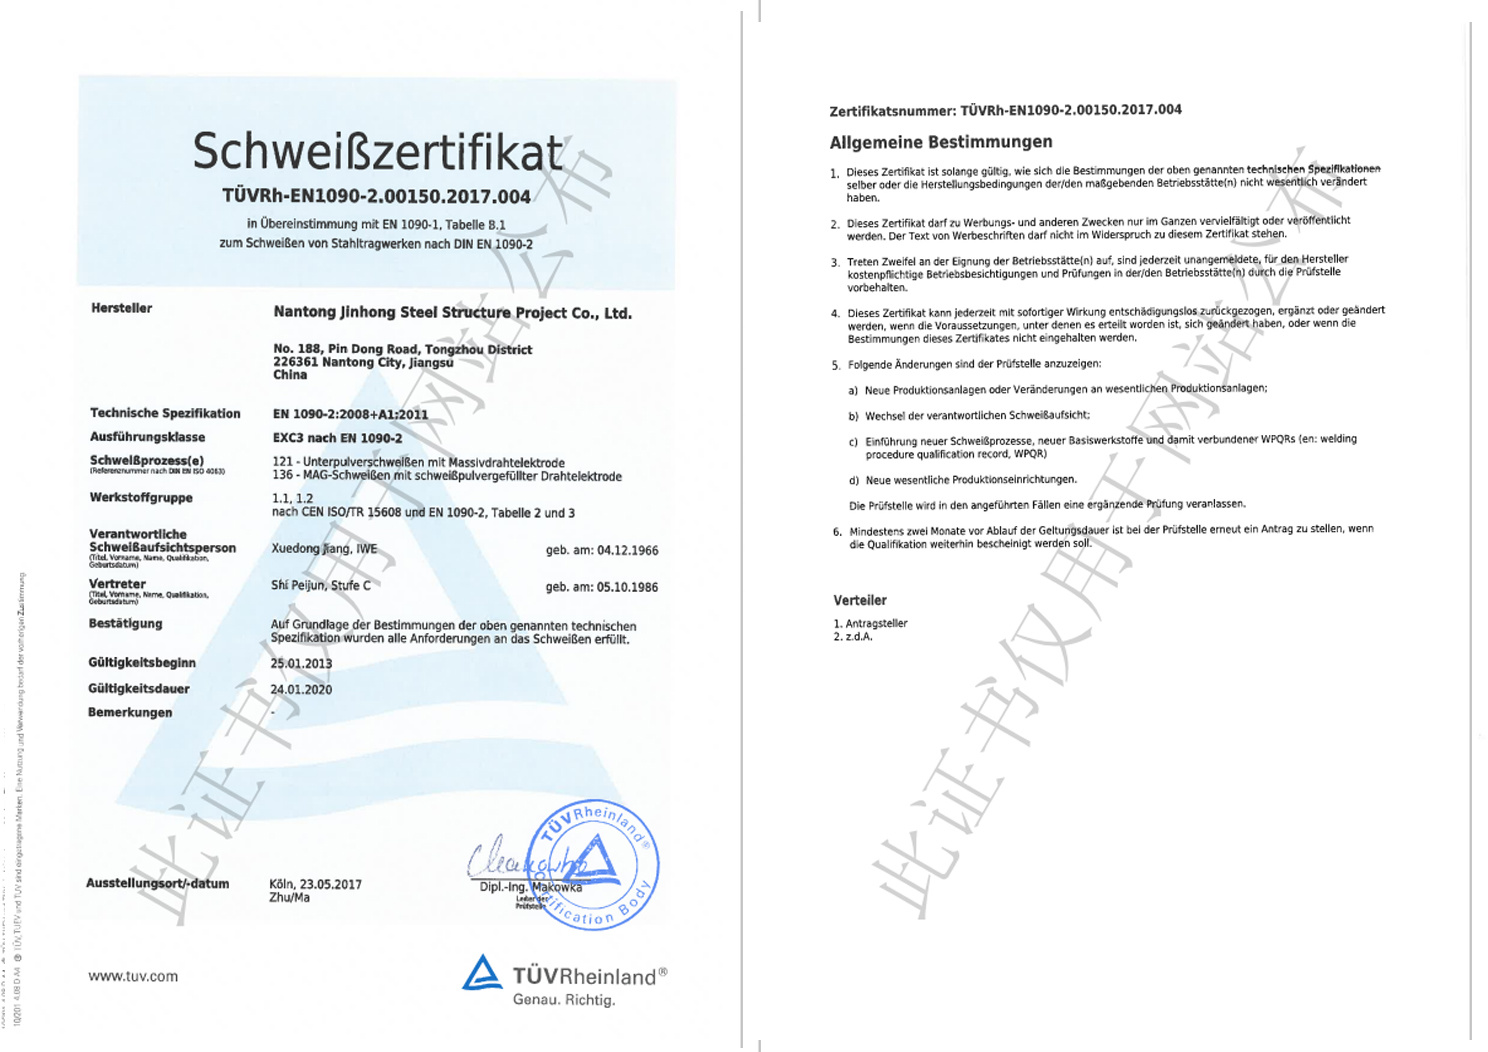 南通晉弘順利通過EN 1090復審，并增加ISO3834國際焊接認證